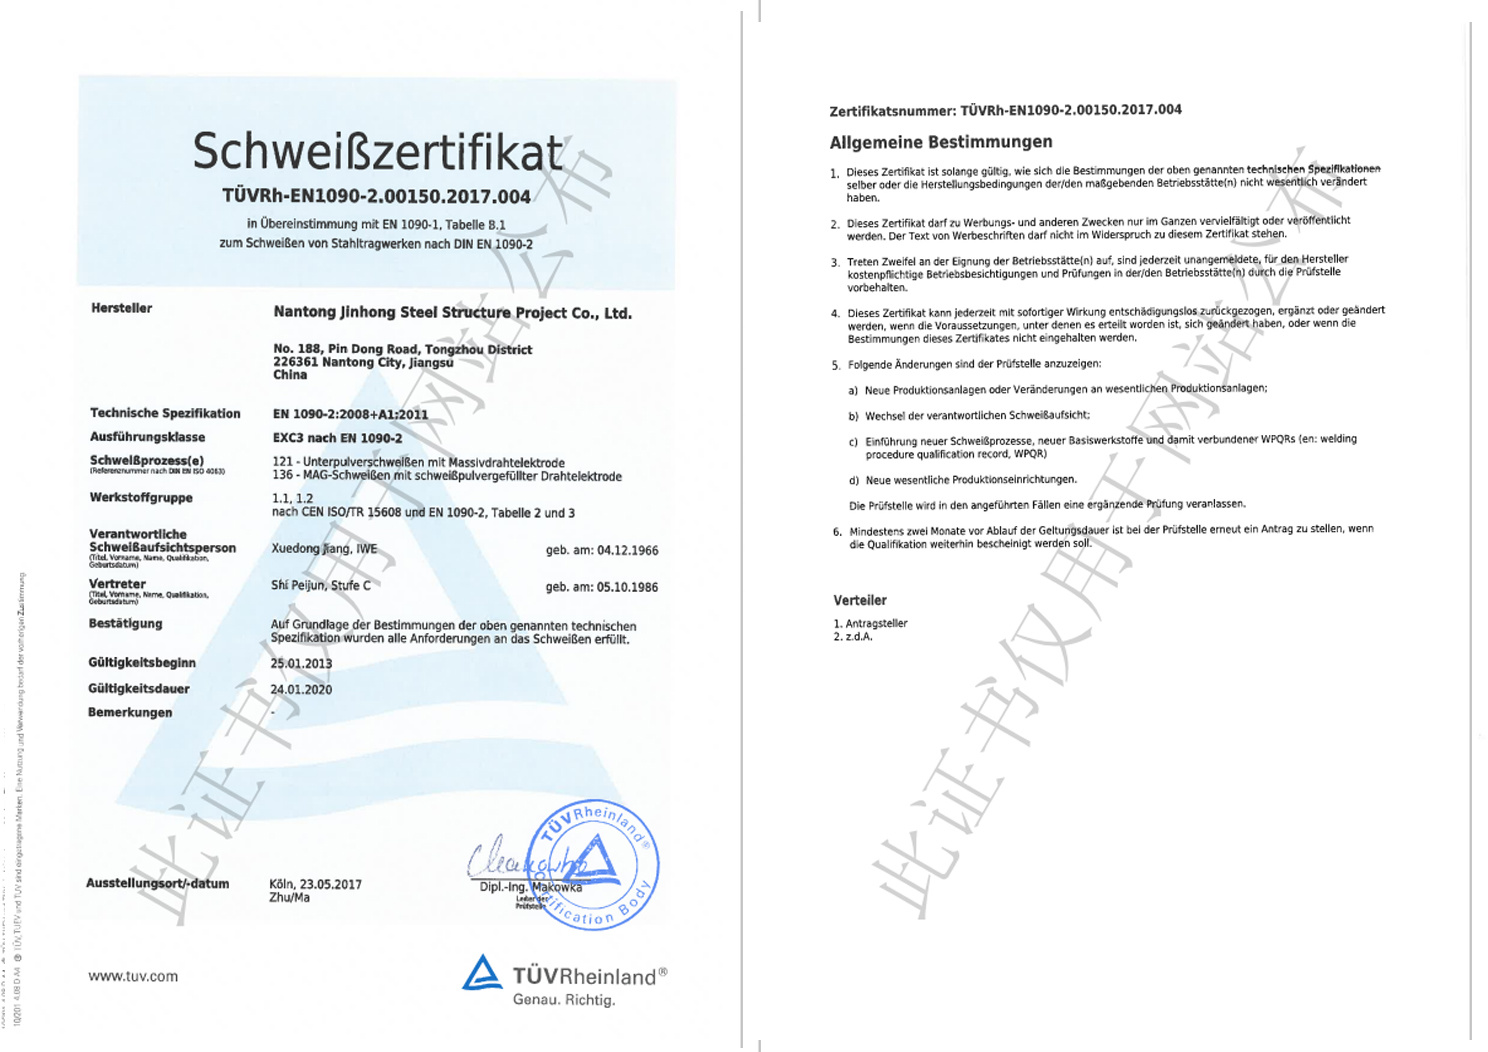 南通晉弘順利通過EN 1090復審，并增加ISO3834國際焊接認證